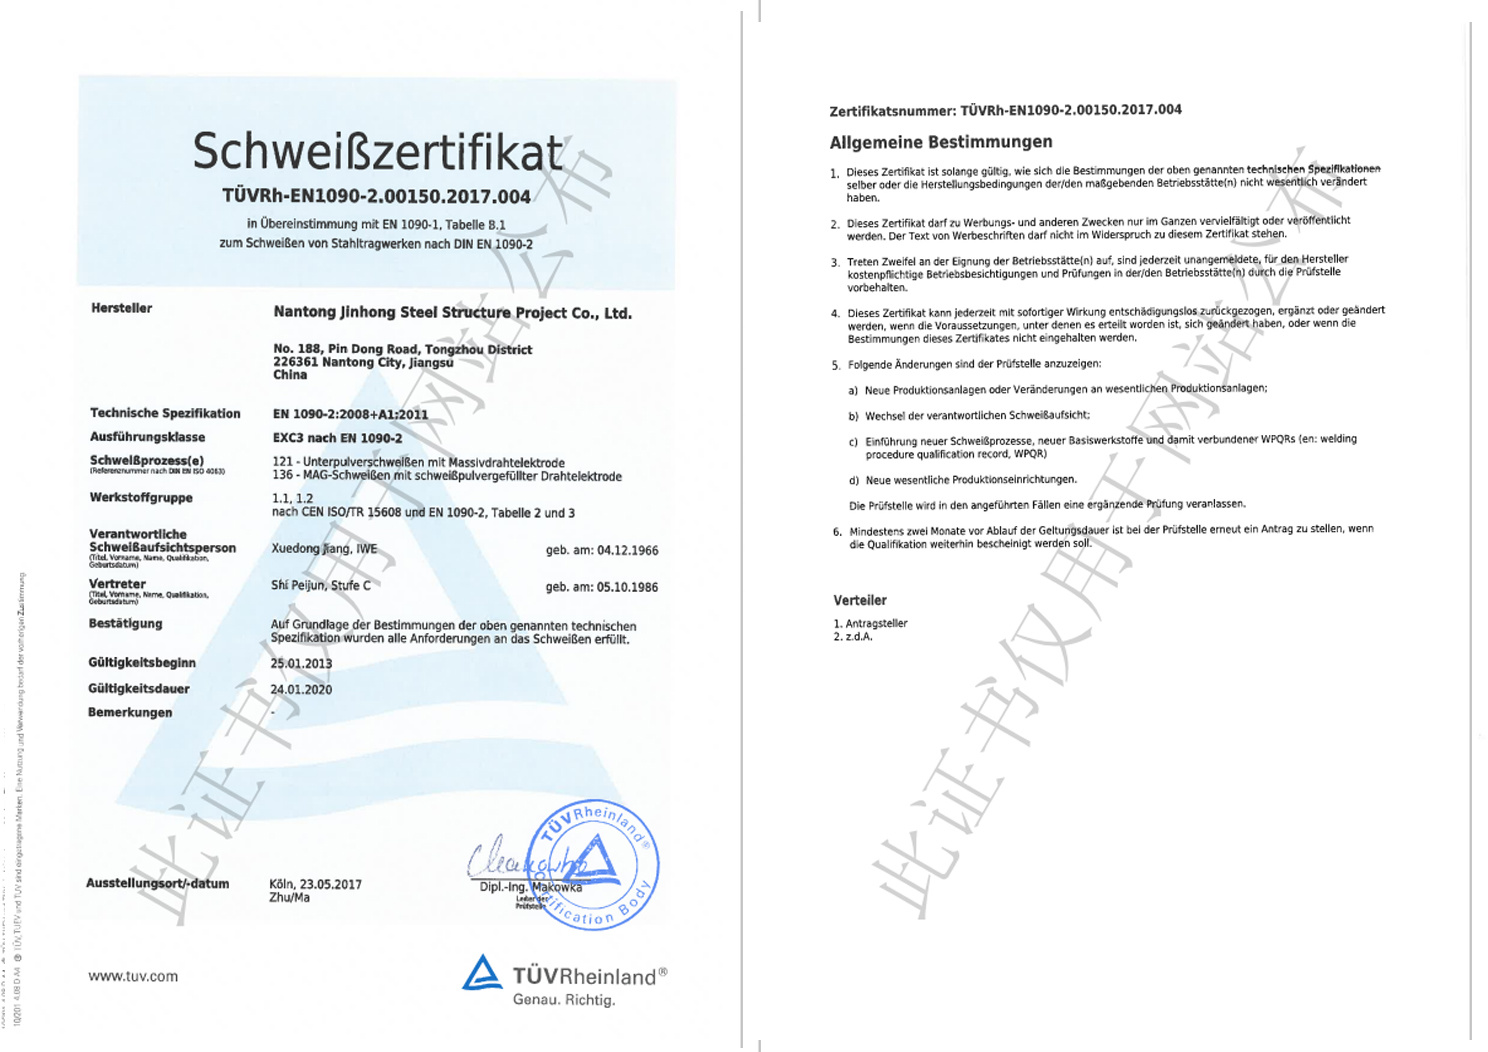 南通晉弘順利通過EN 1090復審，并增加ISO3834國際焊接認證